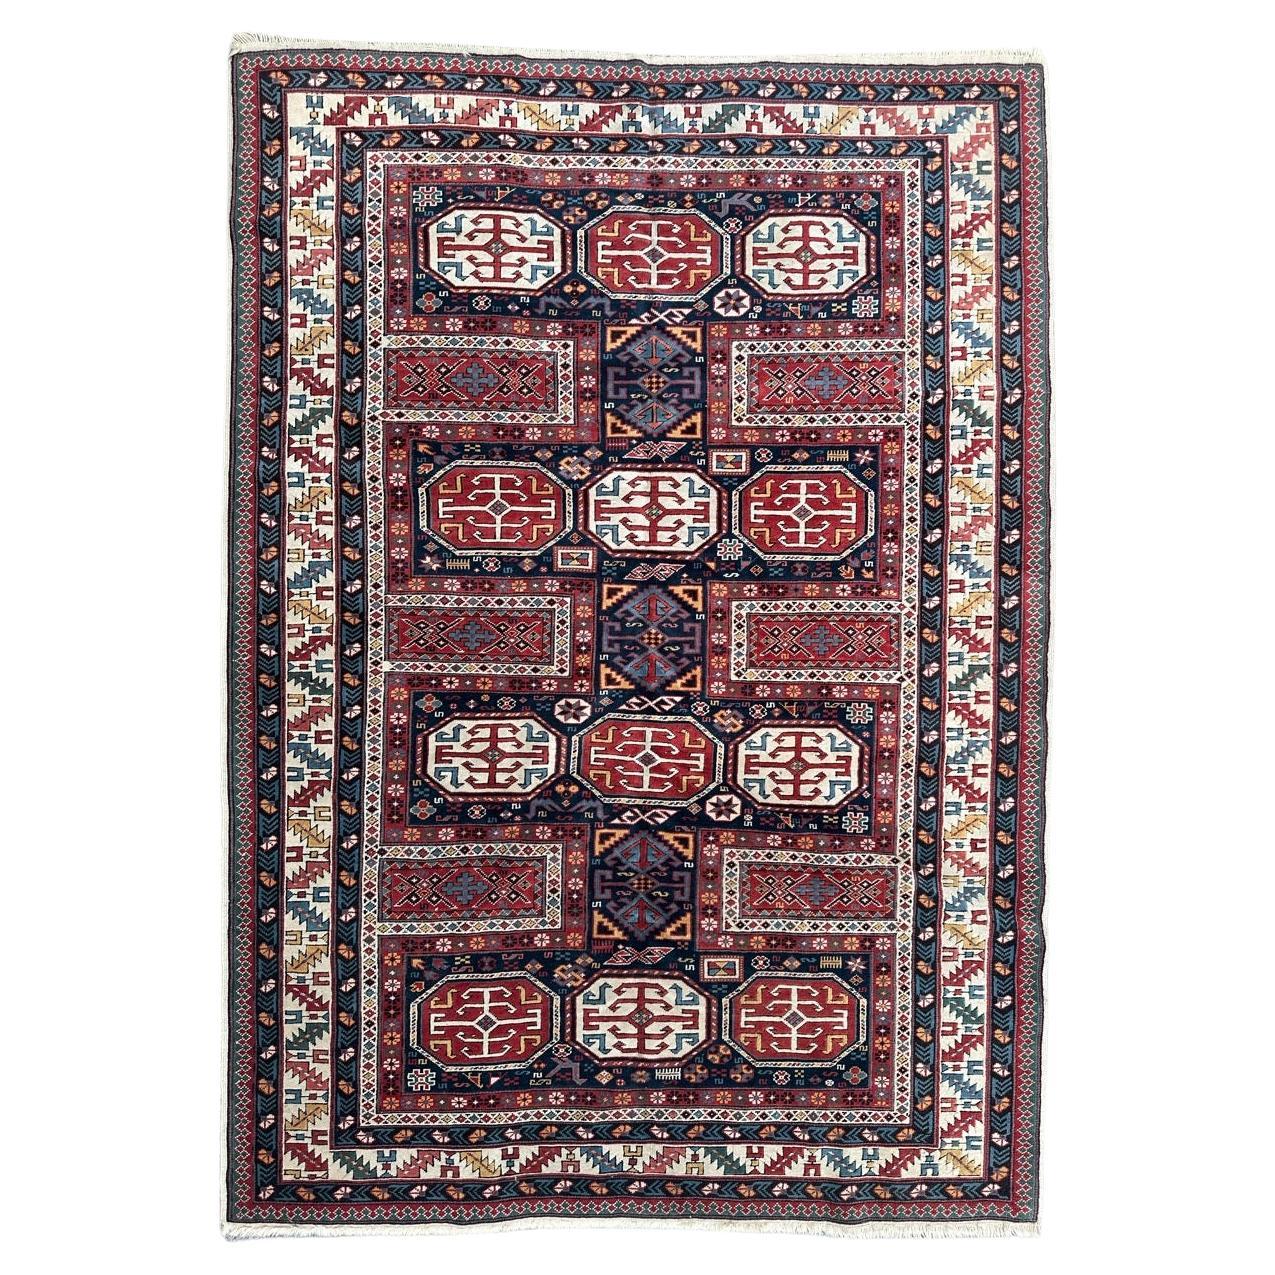 Bobyrug’s wonderful vintage Turkish shirvan design rug For Sale